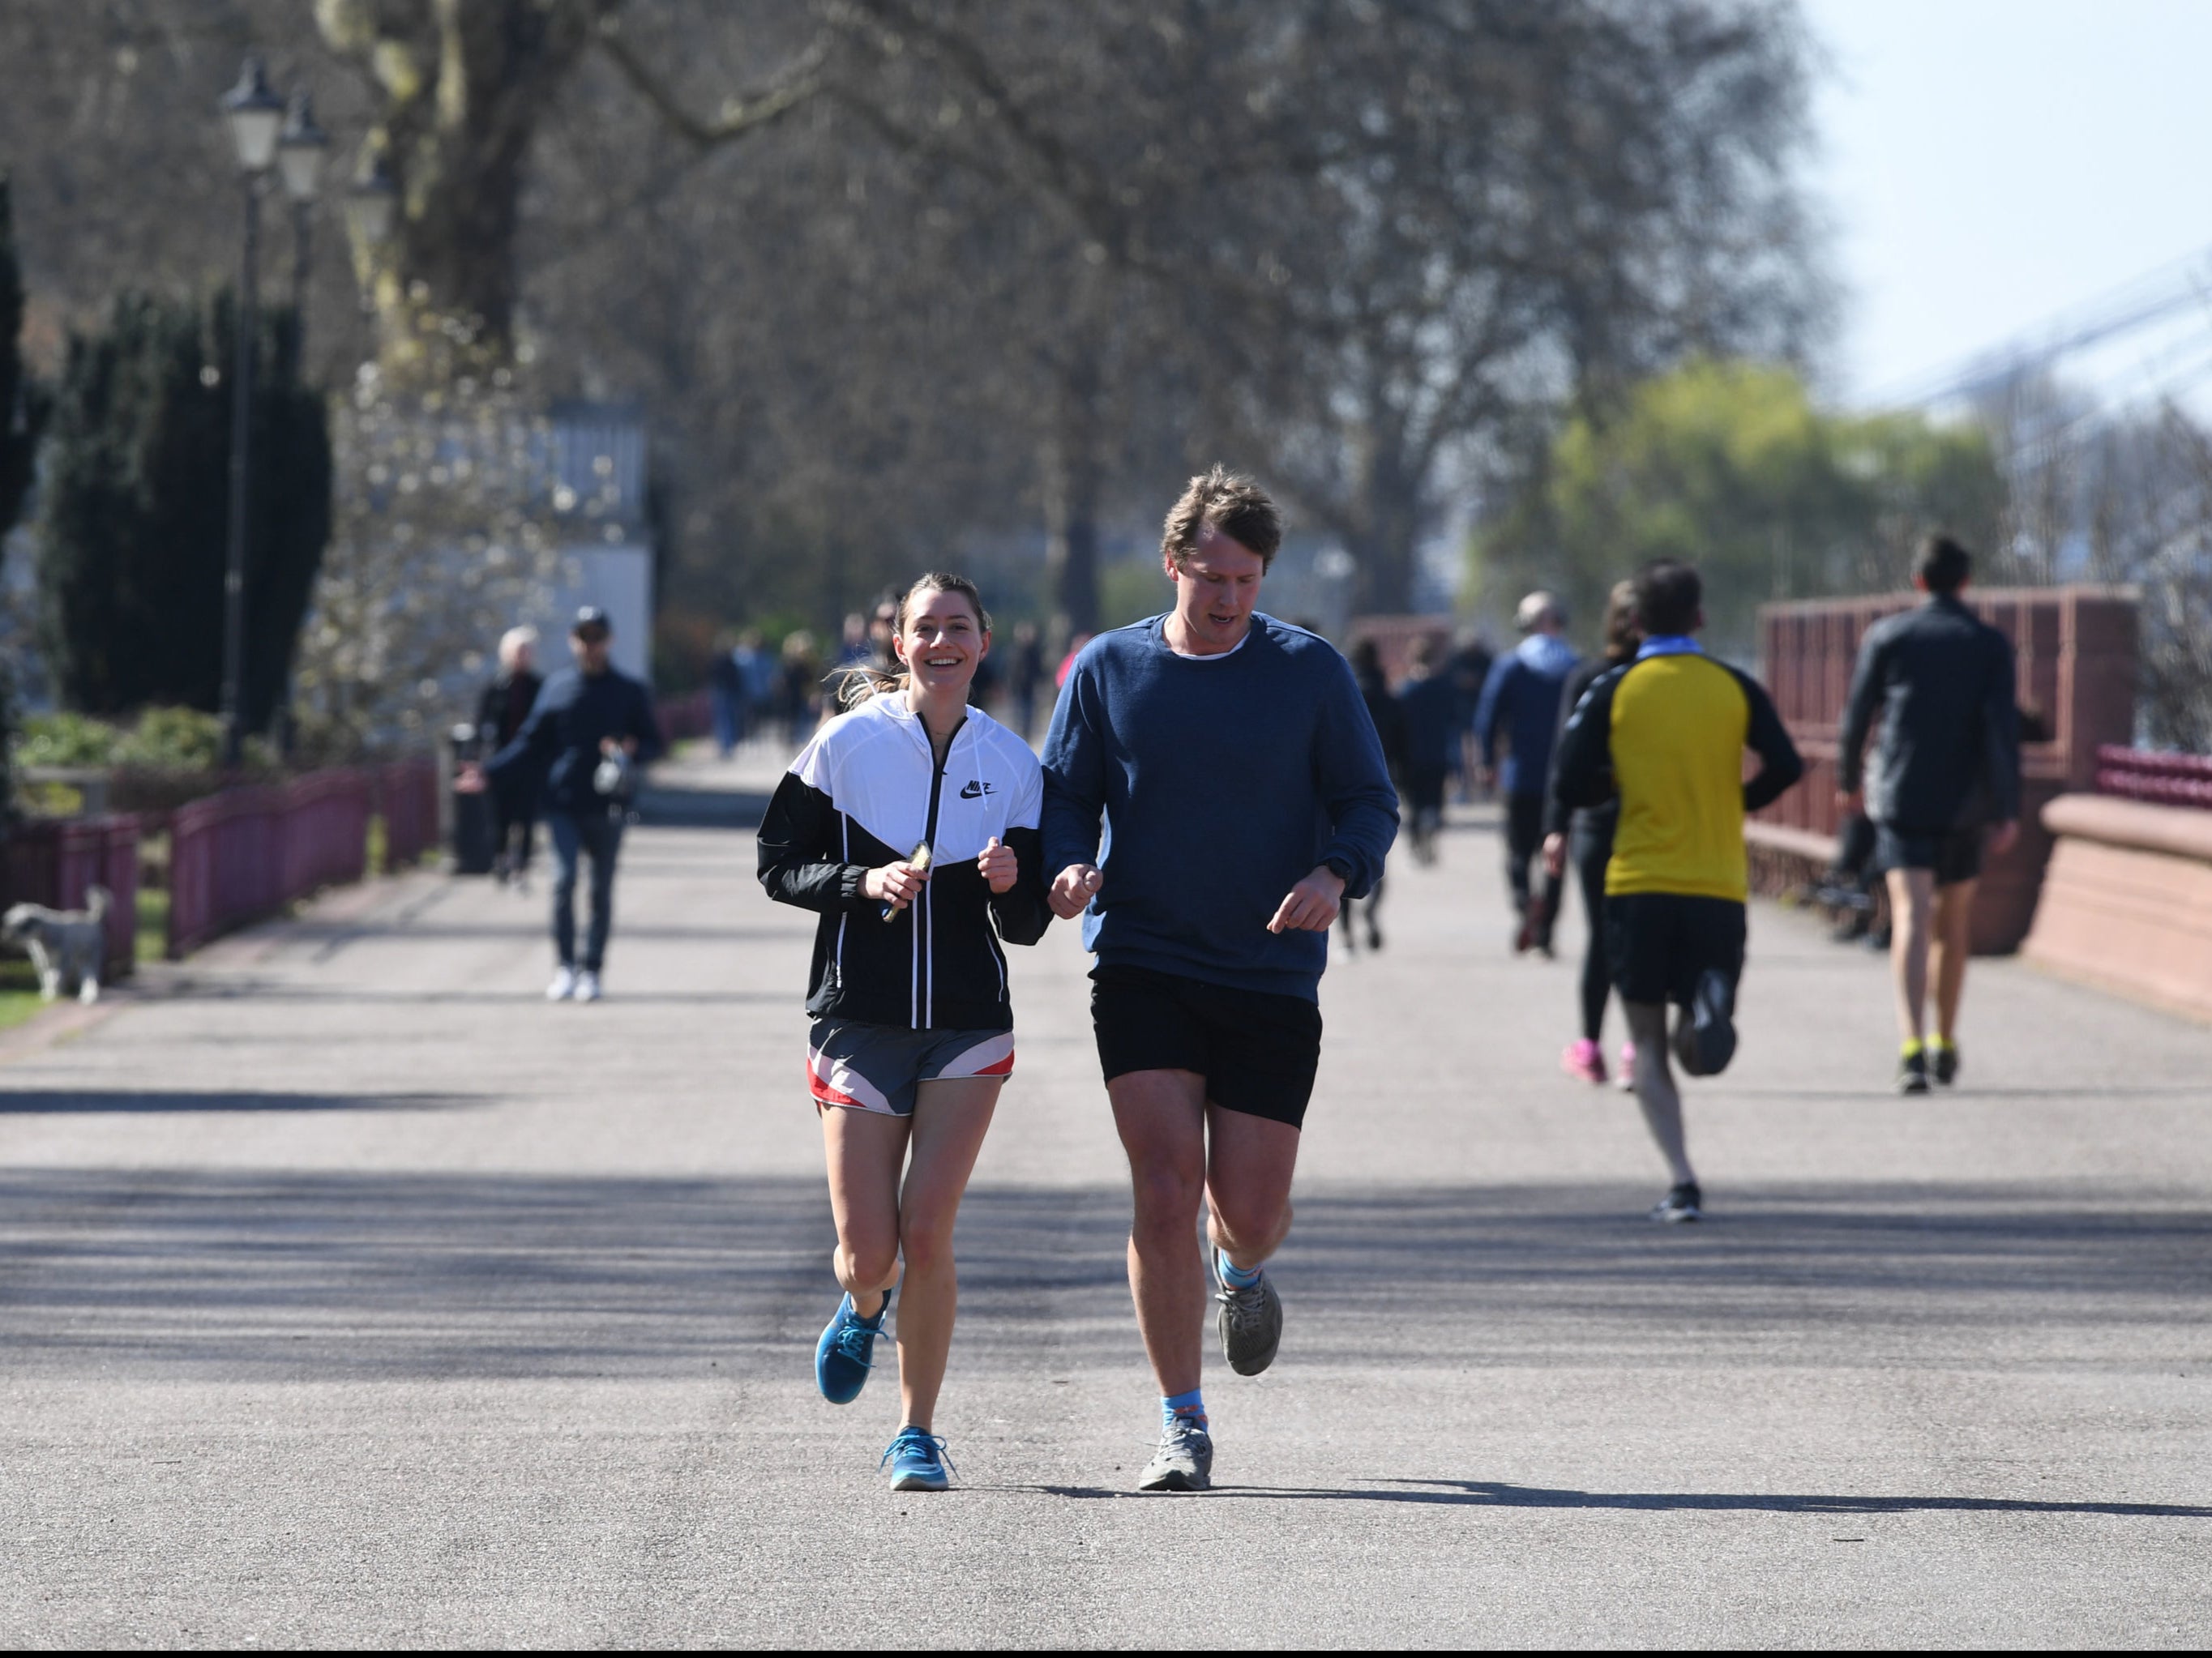 People jogging in Battersea Park, London